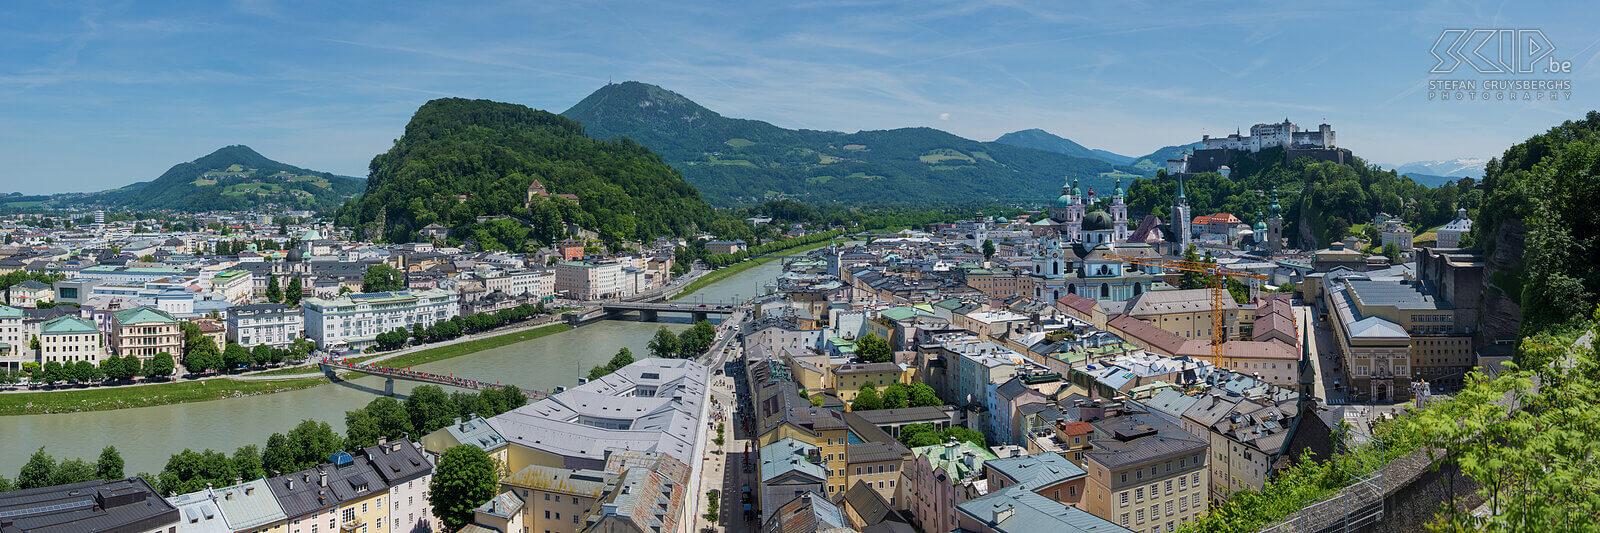 Oostenrijk - Salzburg en Hohensalzburg Zicht op de stad Salzburg en de indrukwekkende burcht Hohensalzburg vanaf de Mönchsberg Stefan Cruysberghs